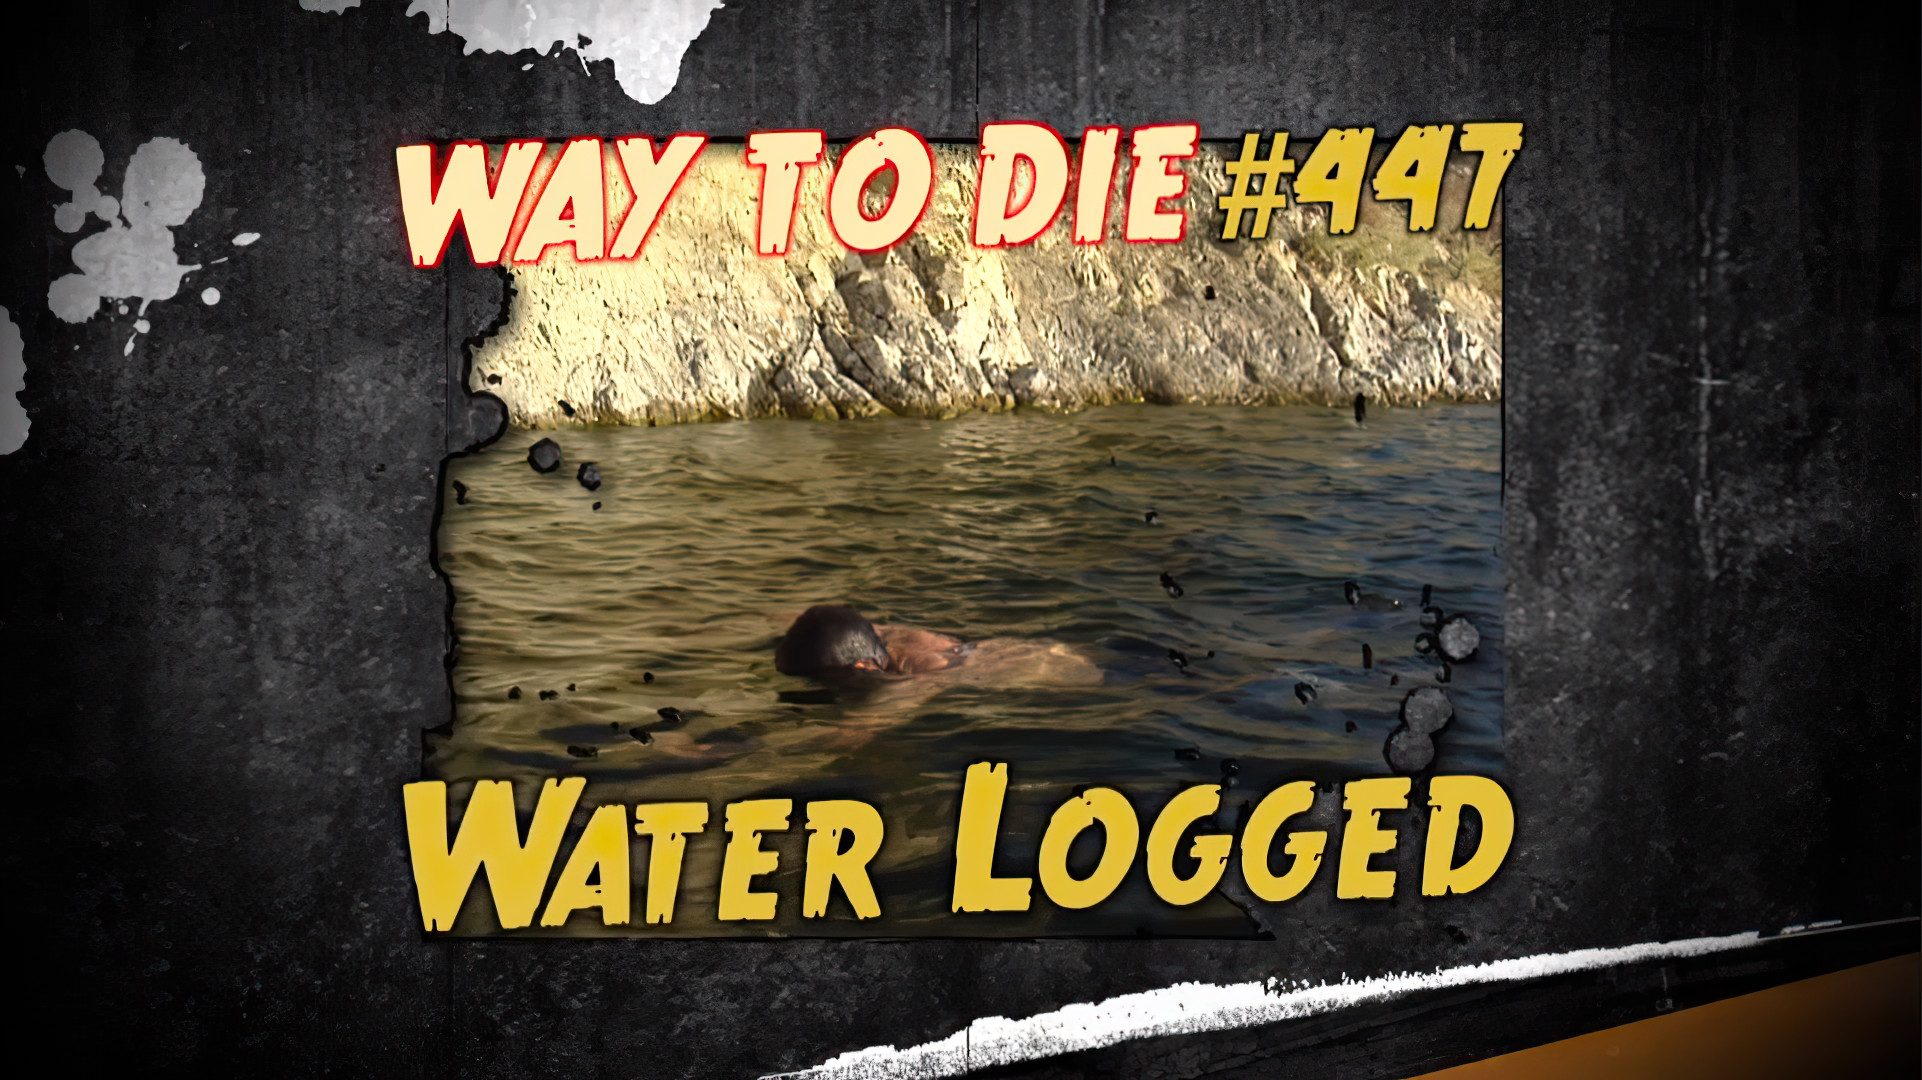 1000 ways to die waterbed